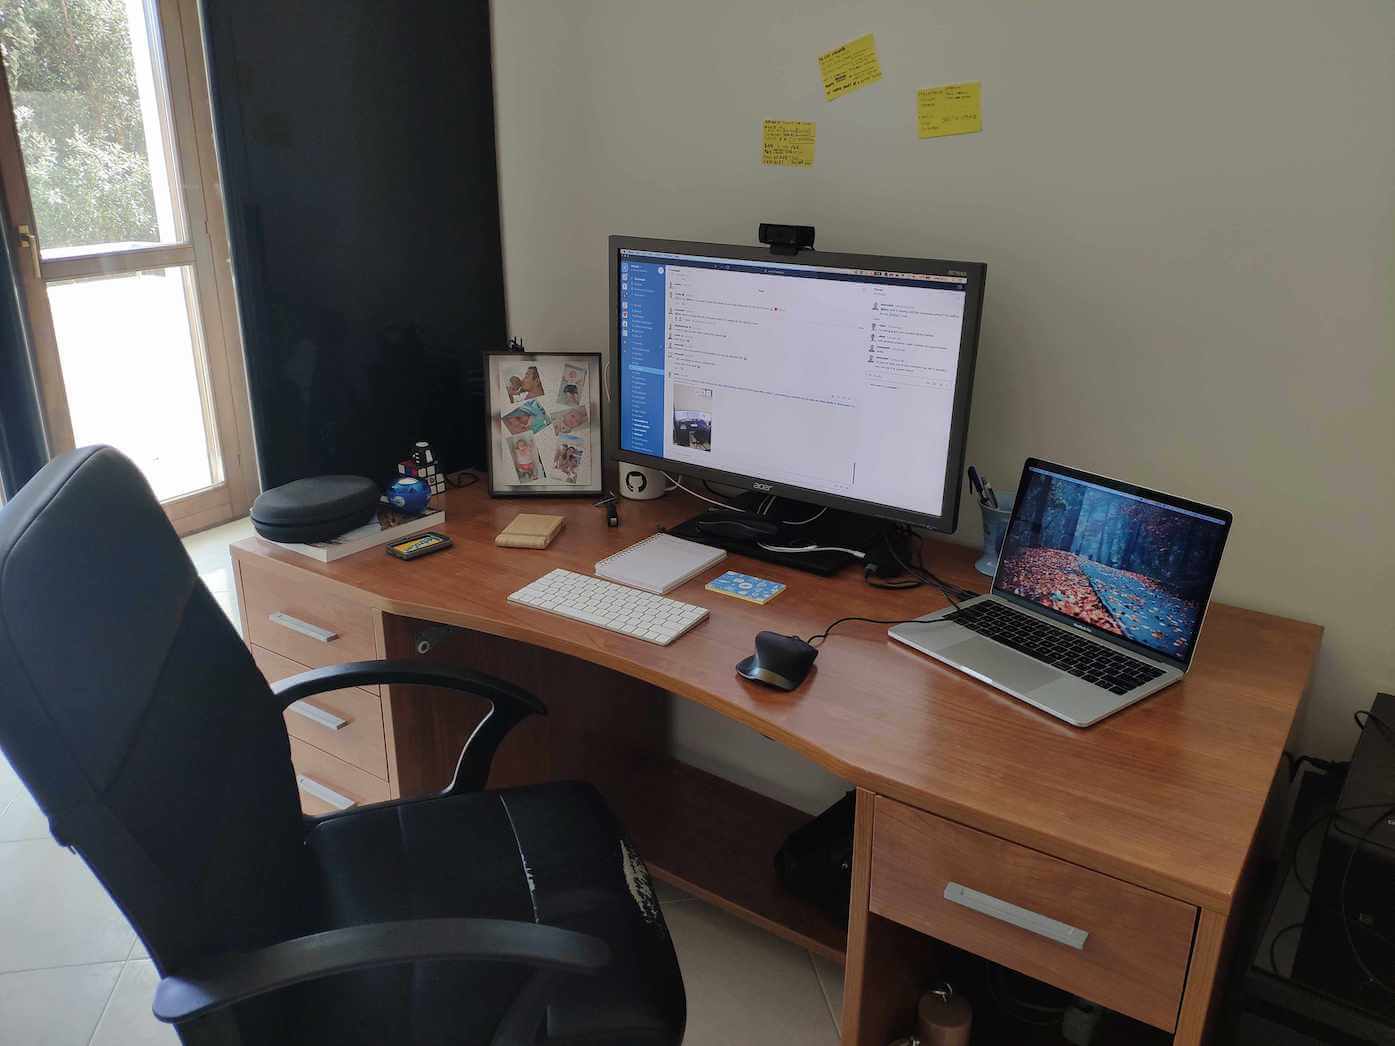 Daniele's home office setup.